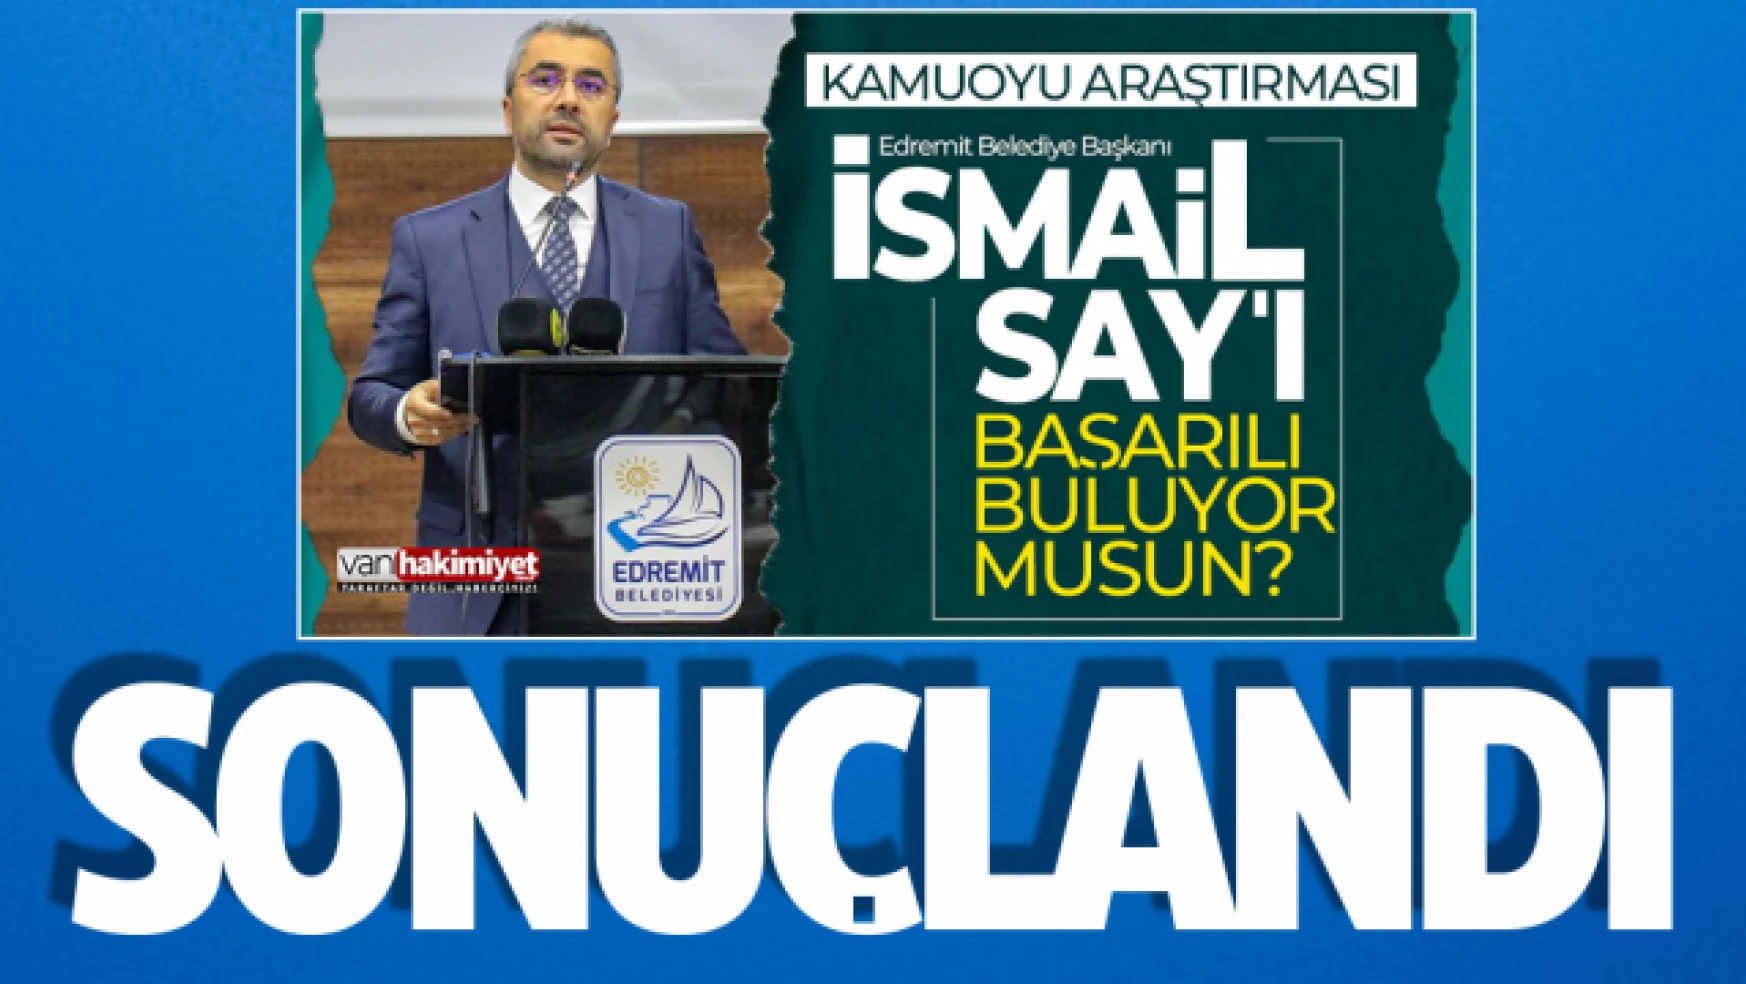 Edremit Belediye Başkanı İsmail Say'ı başarılı buluyor musunuz? anketi sonuçlandı